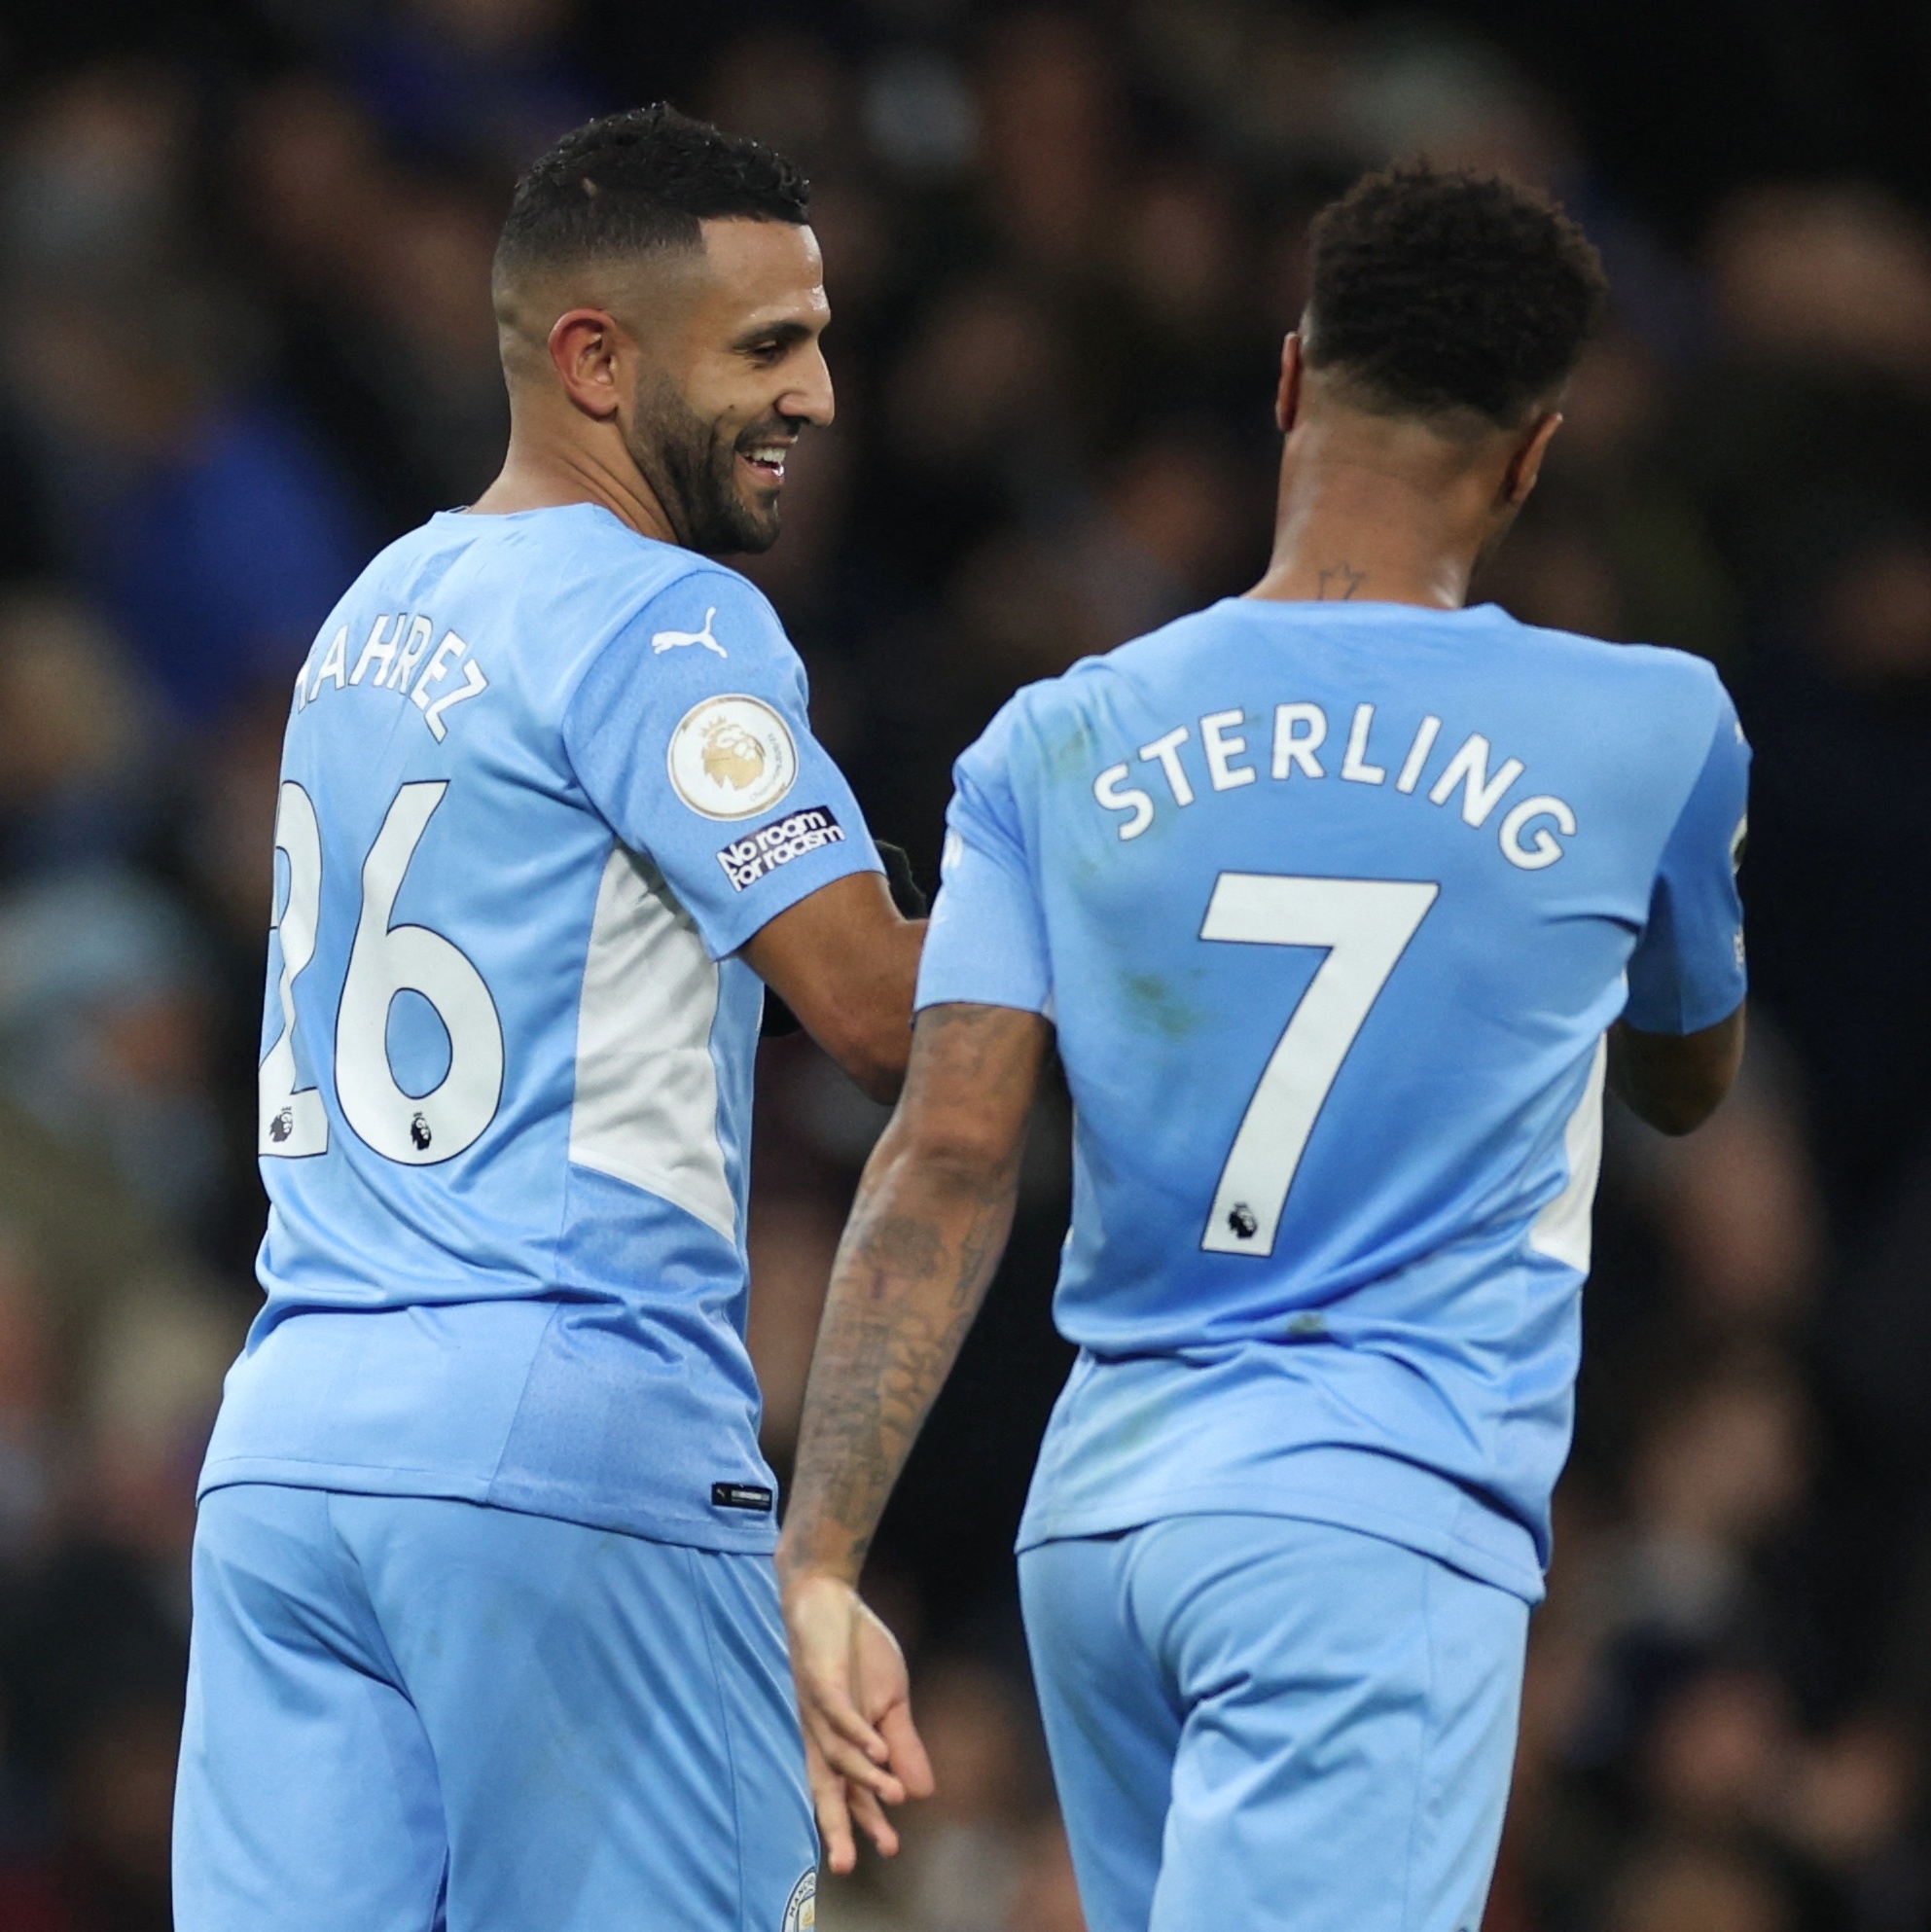 Manchester City cede empate ao Tottenham e cai para o 3º lugar do  Campeonato Inglês • Blog do Anderson Souza